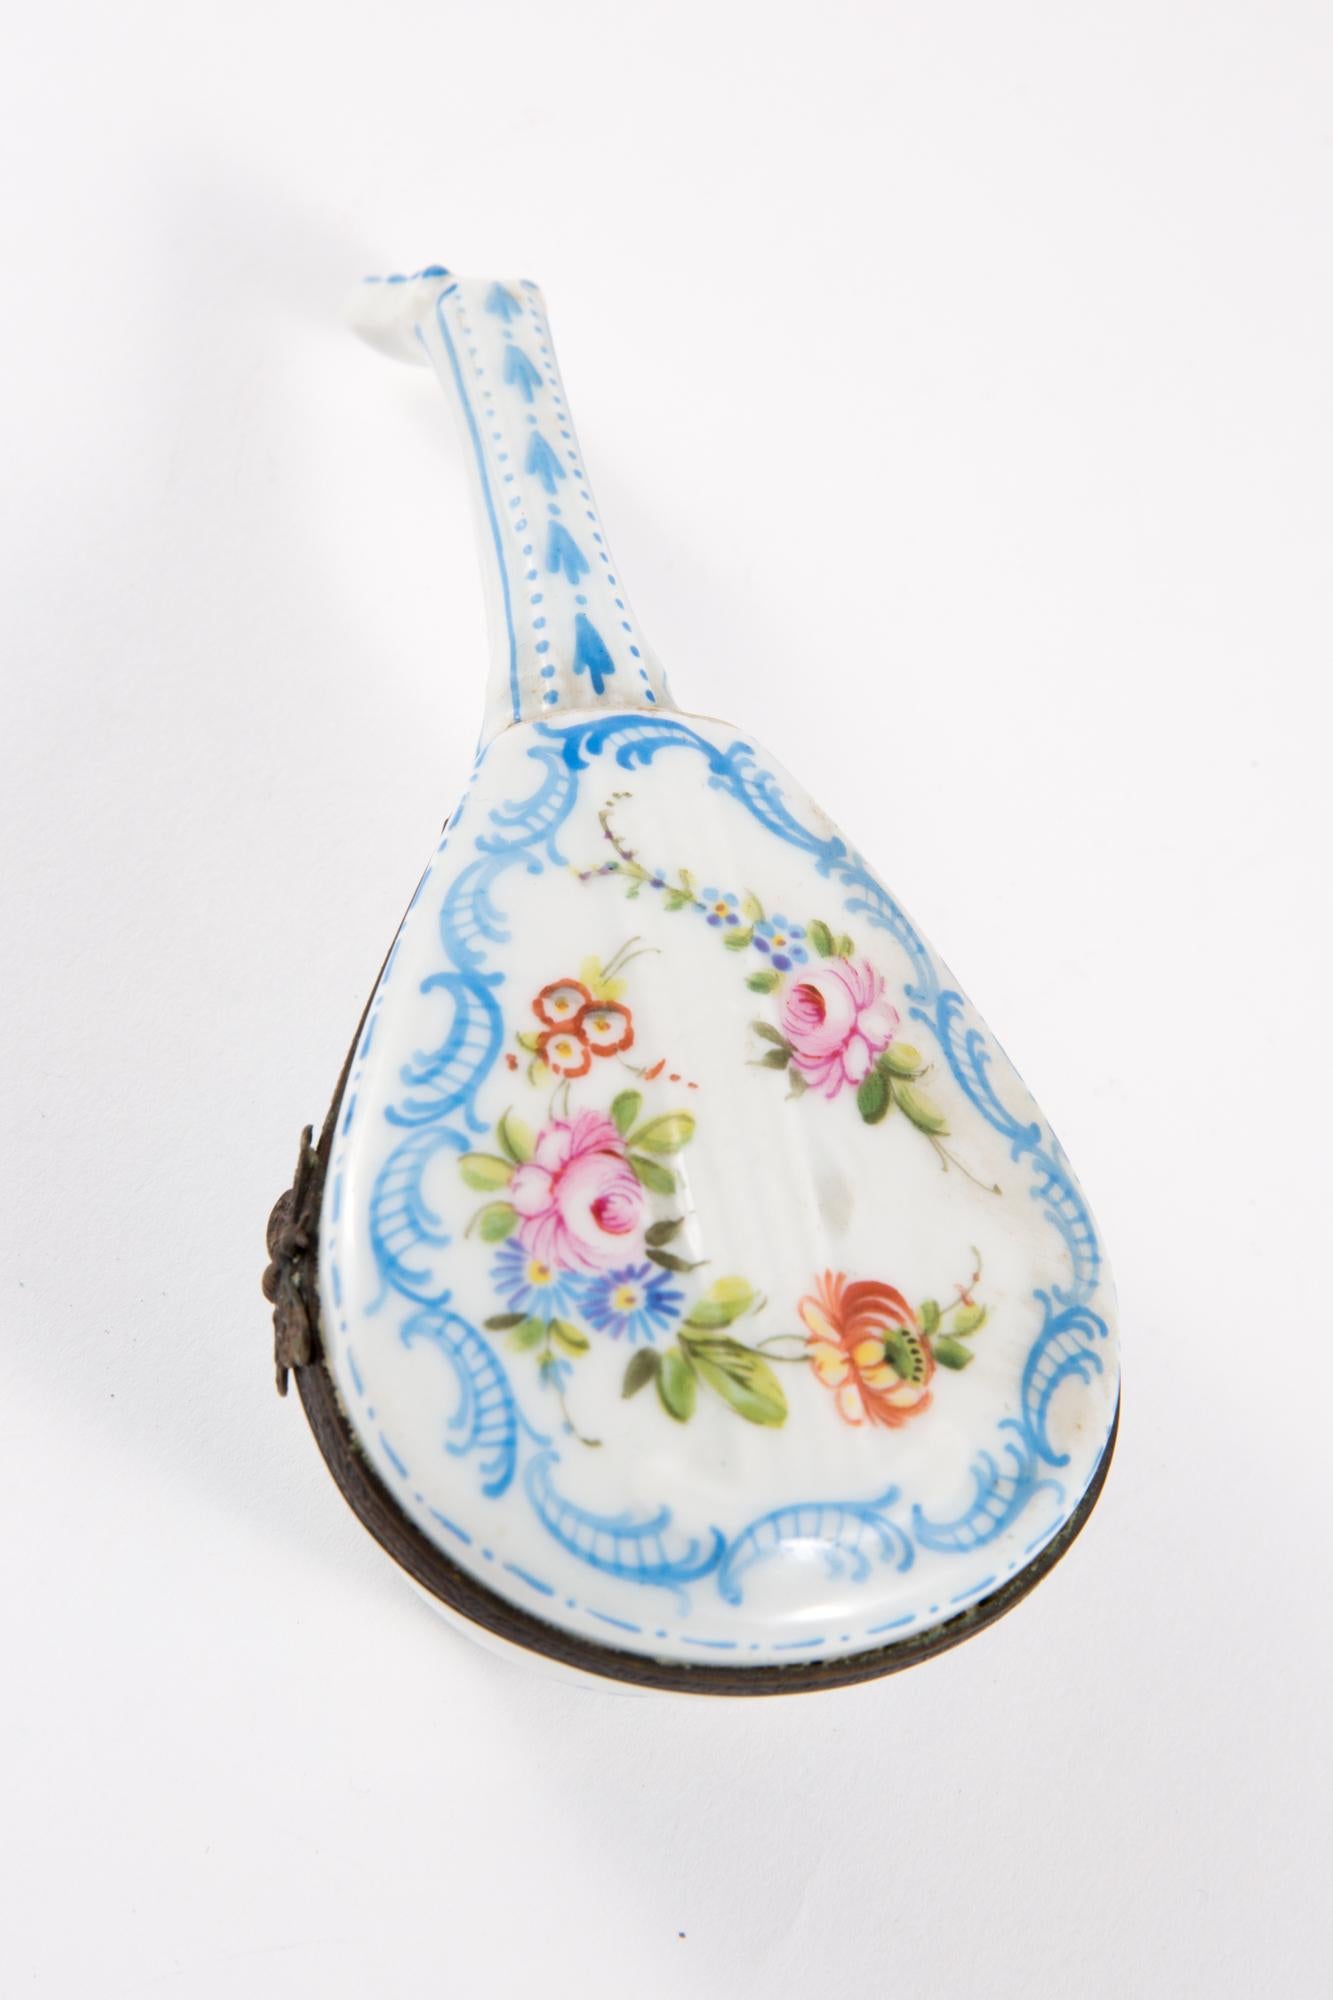 Mandolinendose aus Porzellan mit einem Metallrahmen, einem Schmetterlingsverschluss und einem mehrfarbigen Blumendekor.
In gutem Vintage-Zustand. Hergestellt in Frankreich. 
Höhe 4 cm (1,5 Zoll)
Länge 14cm (5.5in.)
Breite 6 cm (2,3 Zoll)
Wir